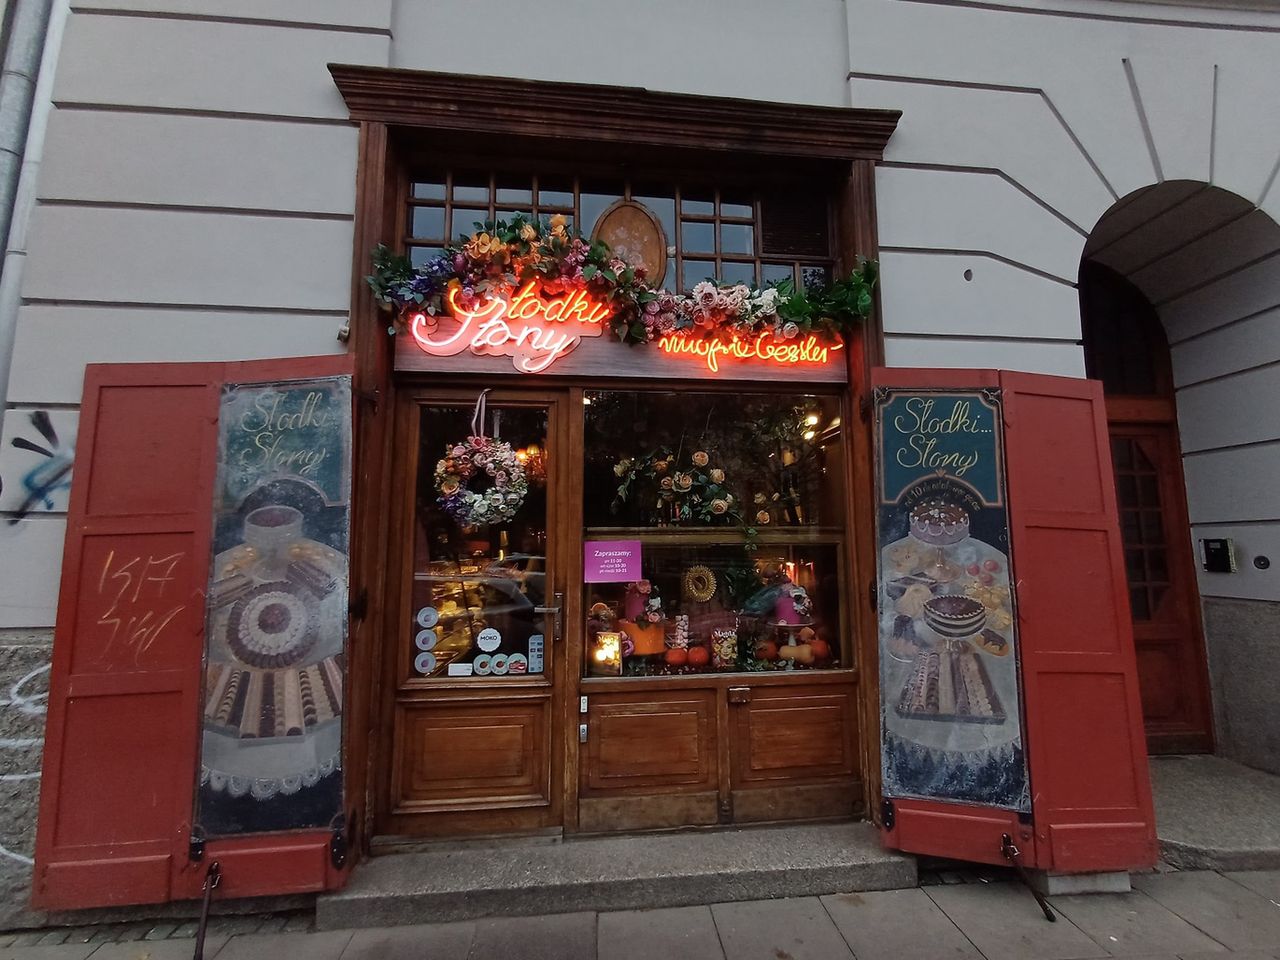 Restauracja "Słodki Słony" Magdy Gessler